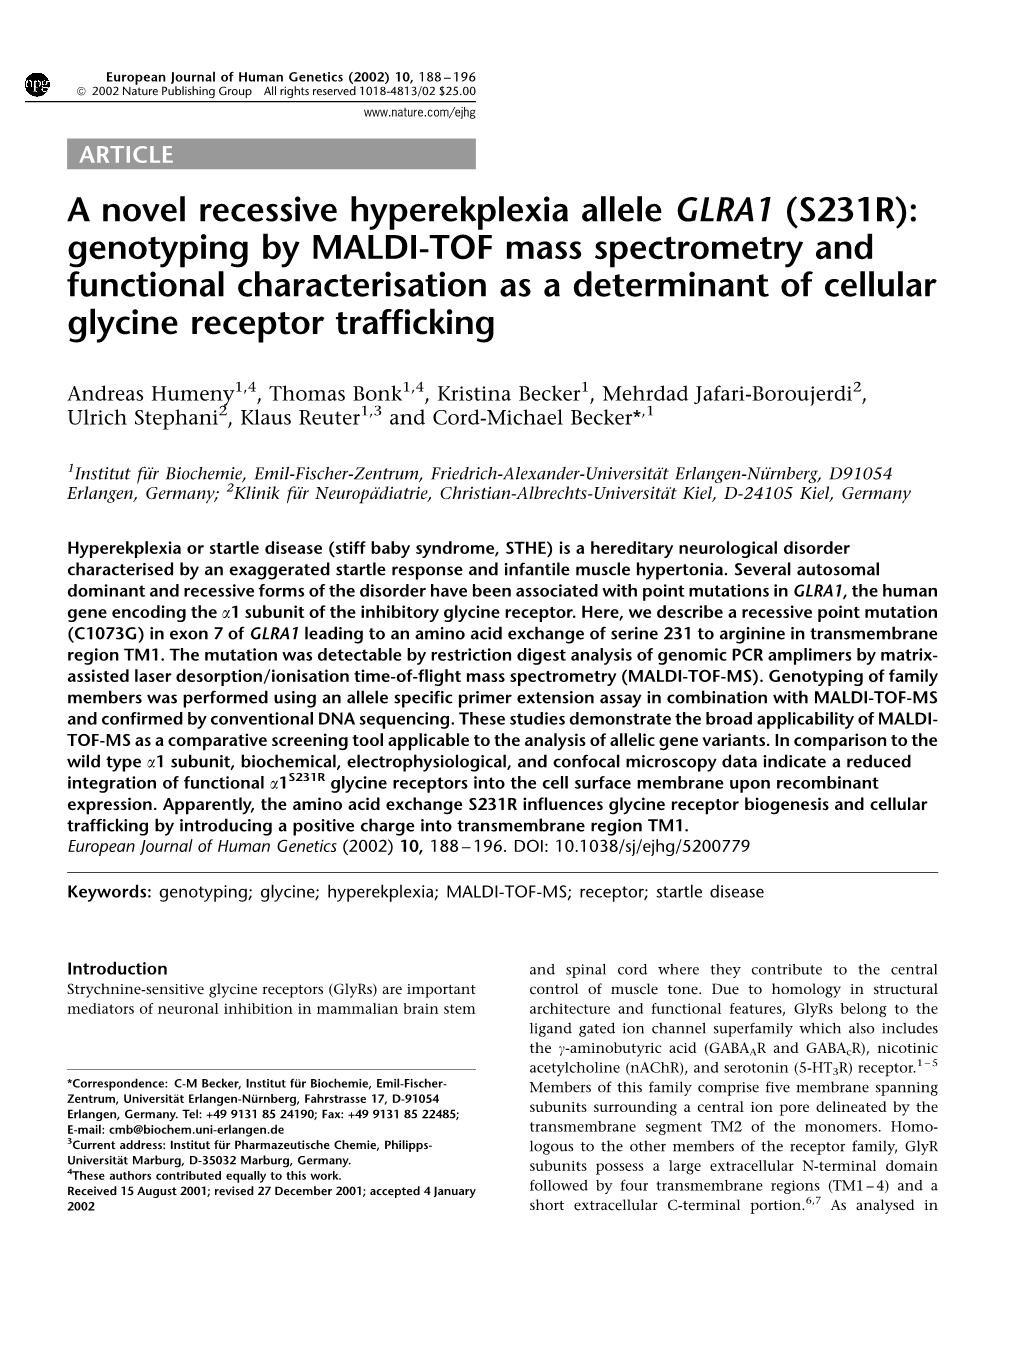 A Novel Recessive Hyperekplexia Allele GLRA1